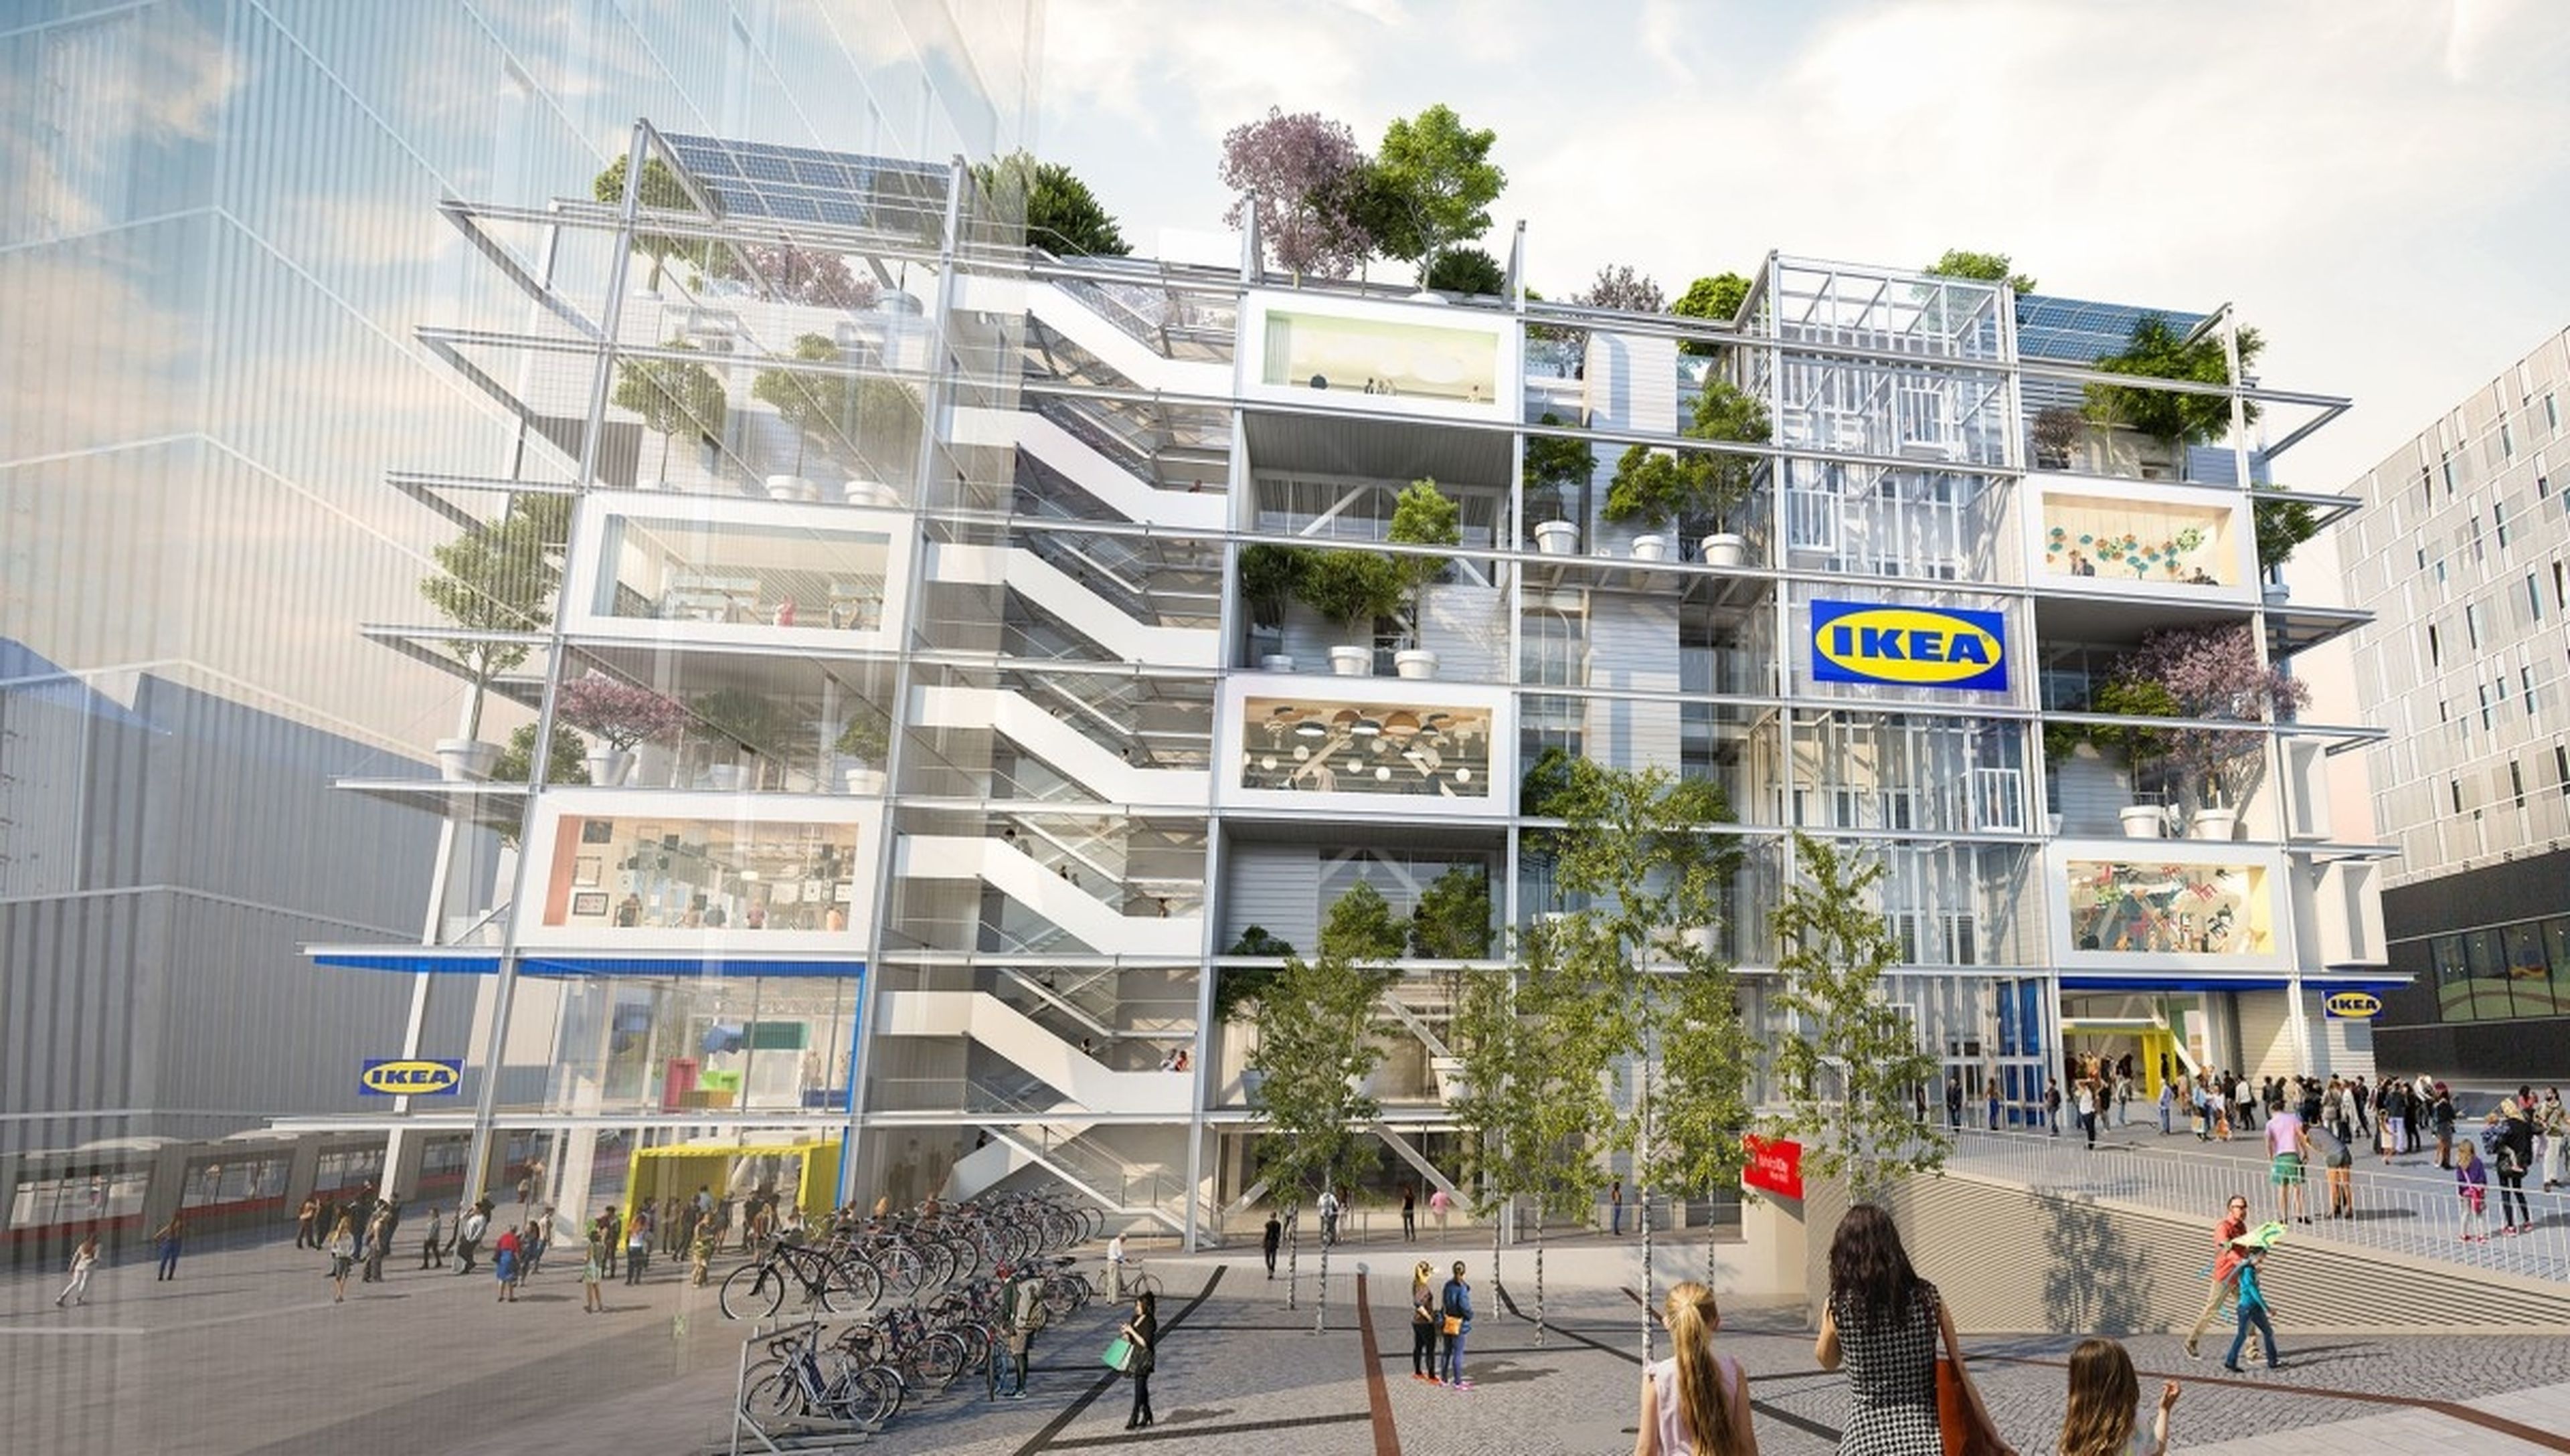 Ikea construye una tienda invadida por los árboles y con aparcamientos solo para bicis